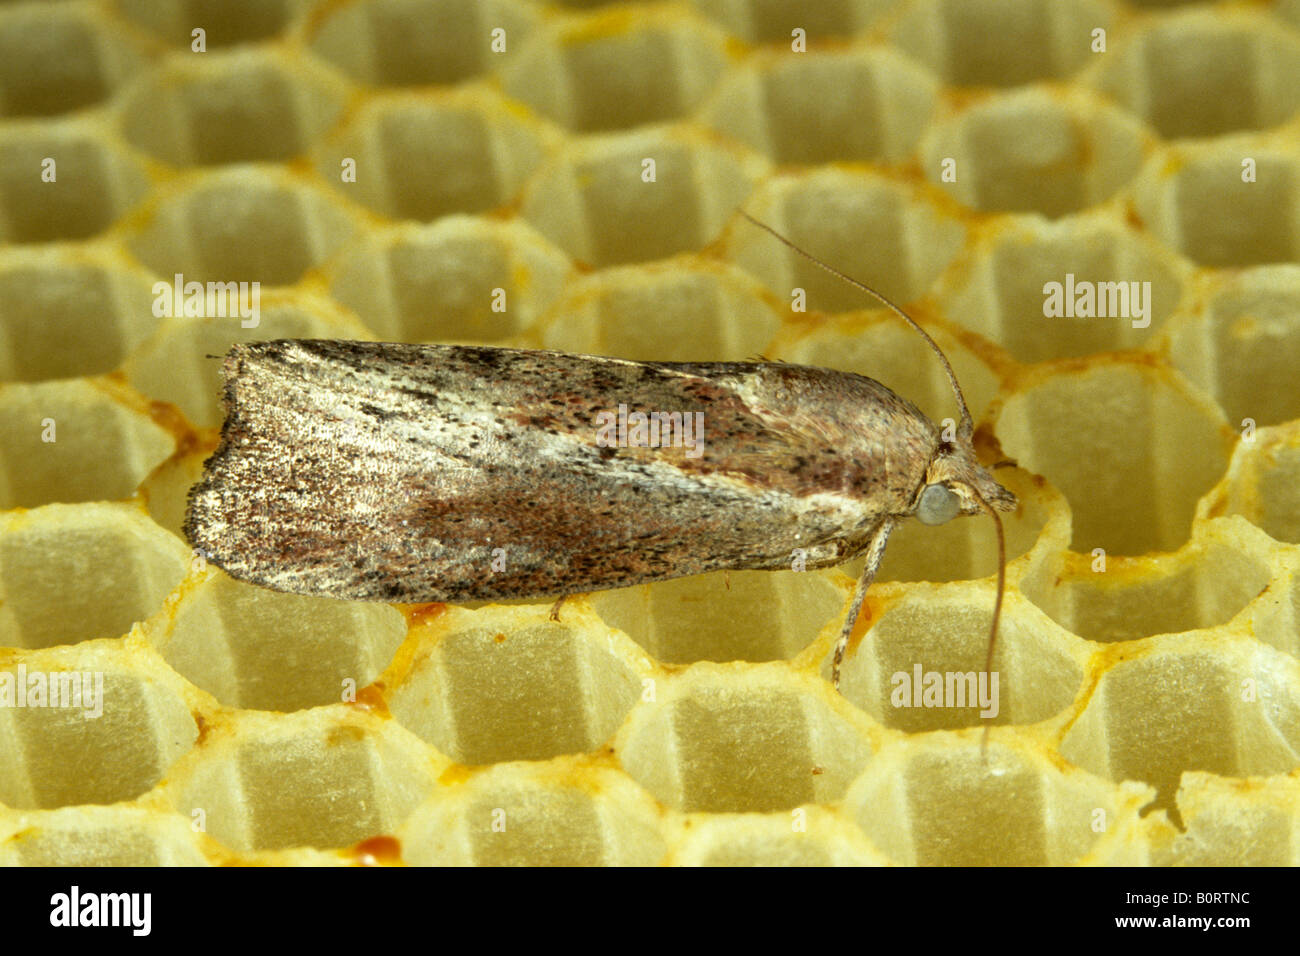 Greater Wax Moth (Galleria mellonella) Stock Photo